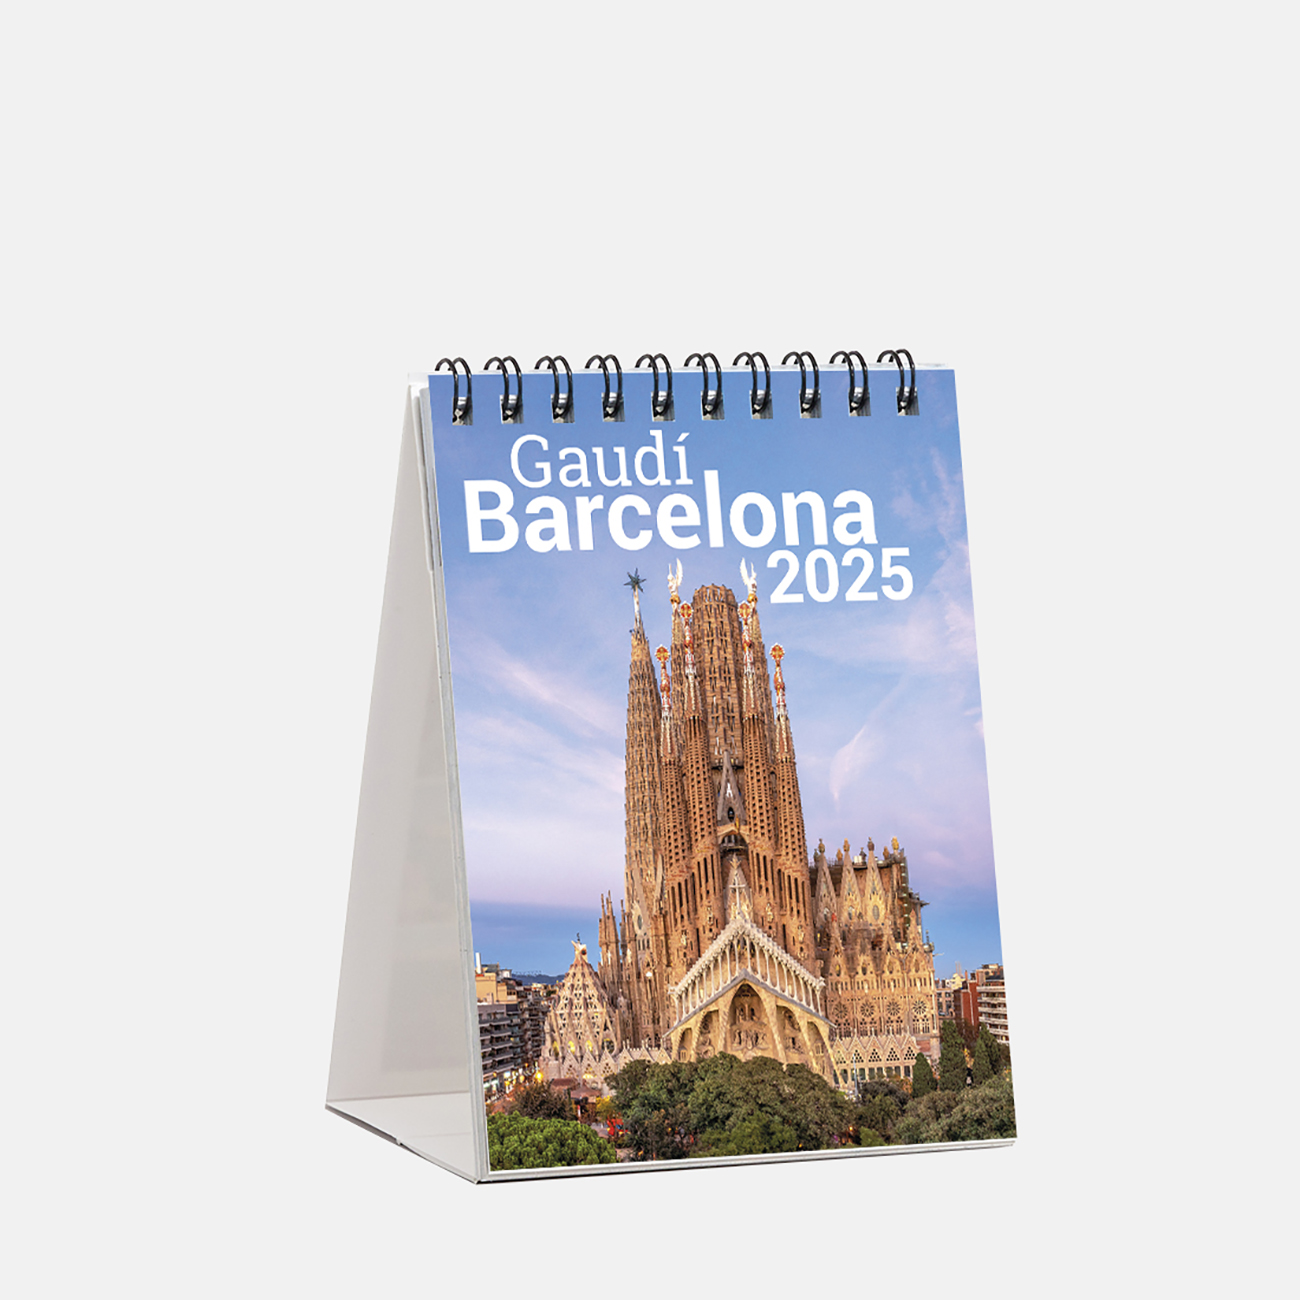 Calendario 2025 Gaudí sm25g2 calendario mini 2025 gaudi